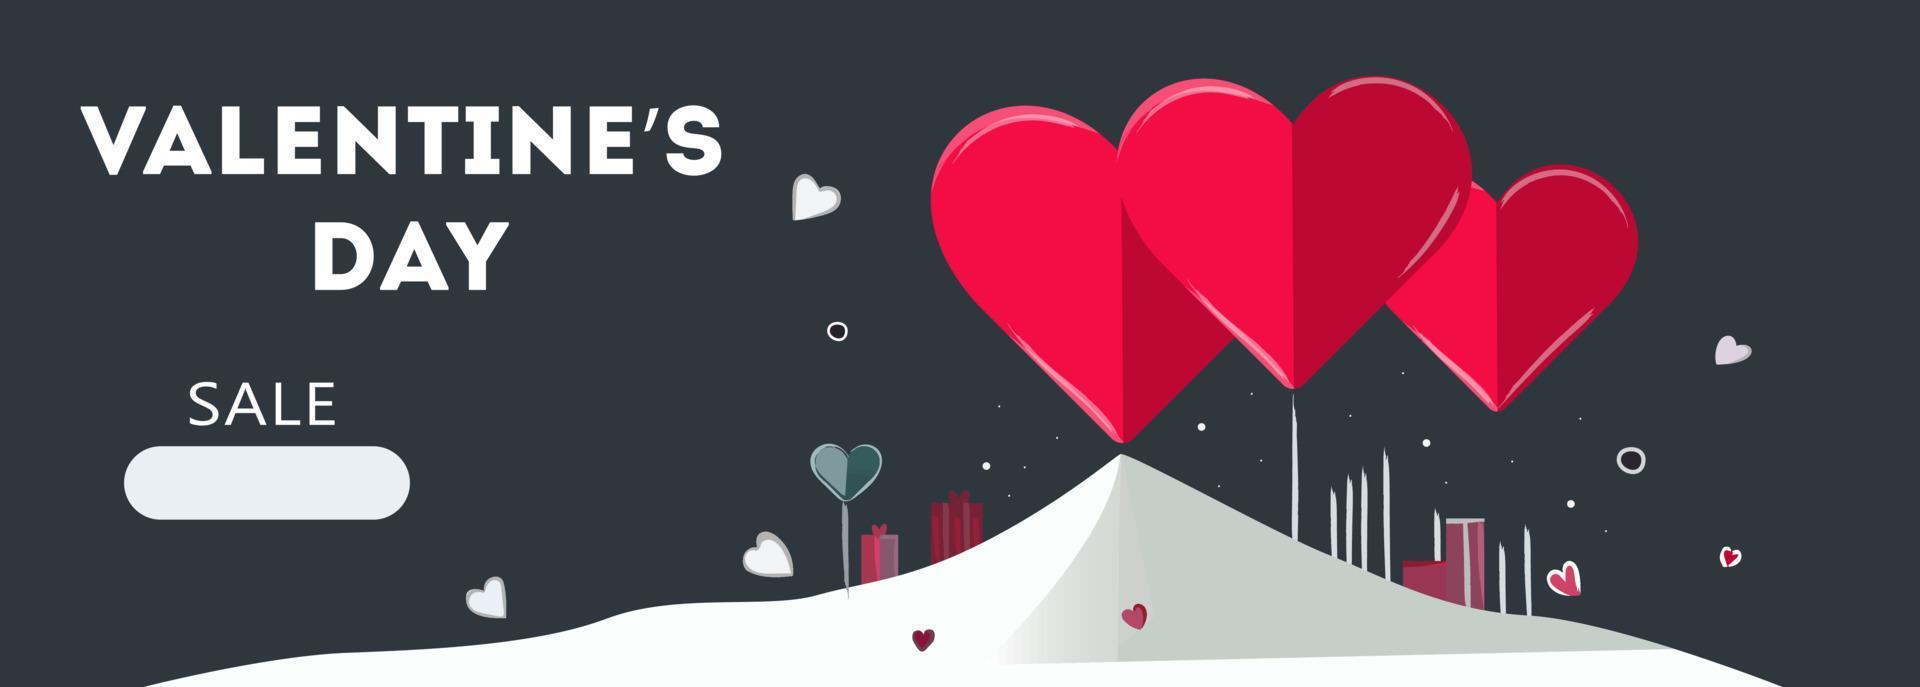 Valentijnsdag dag uitverkoop achtergrond.romantisch samenstelling met harten. vector illustratie voor website, affiches, advertenties, bonnen, promotionele materialen.